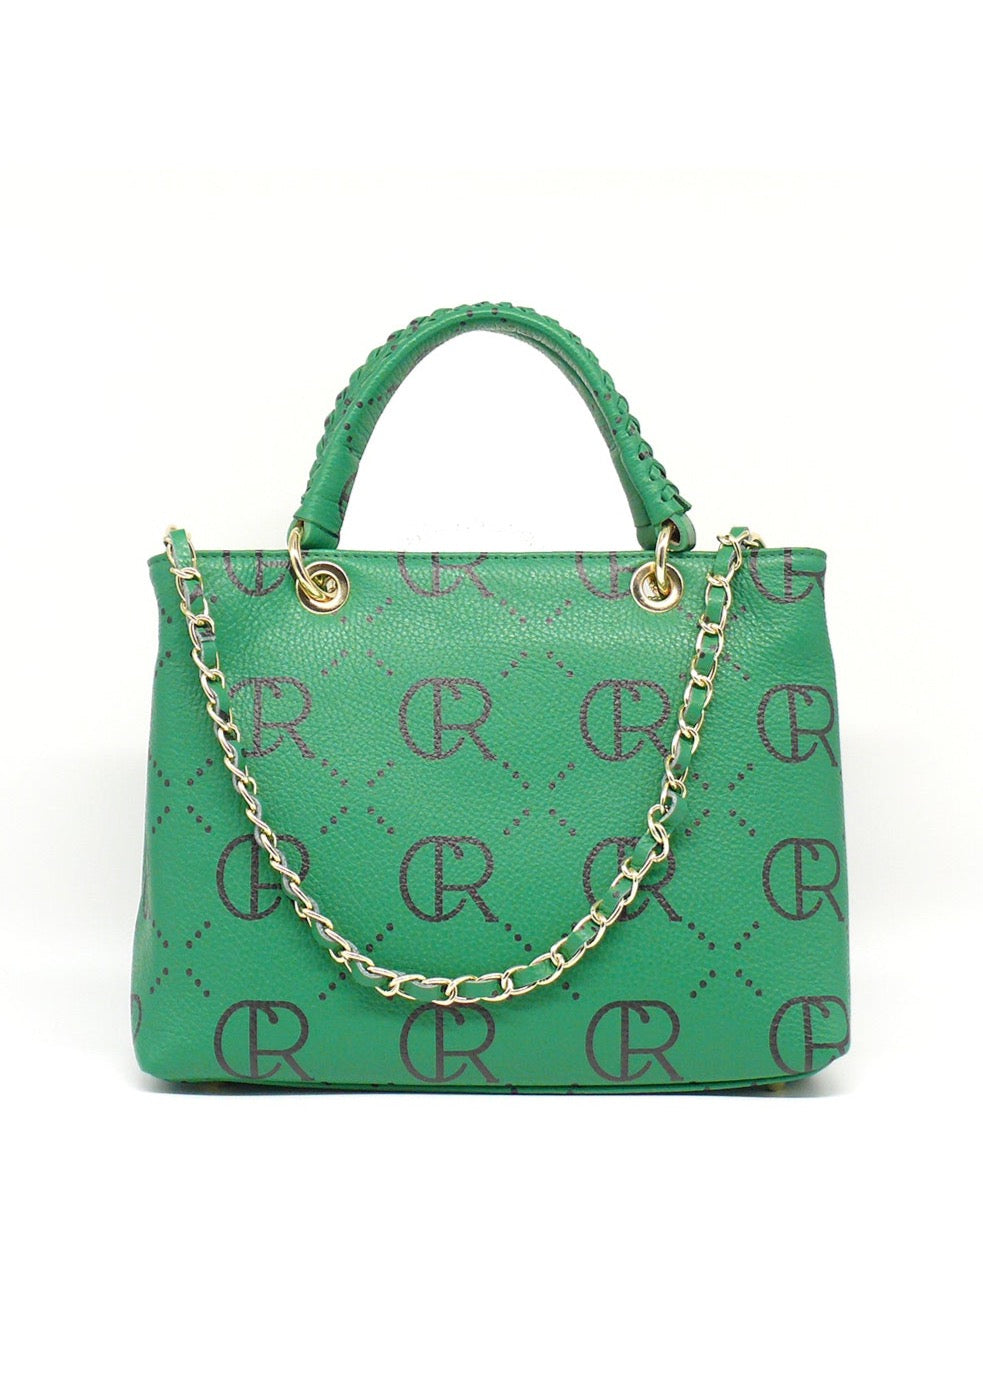 Leder Handtasche in Grün mit Logoprint